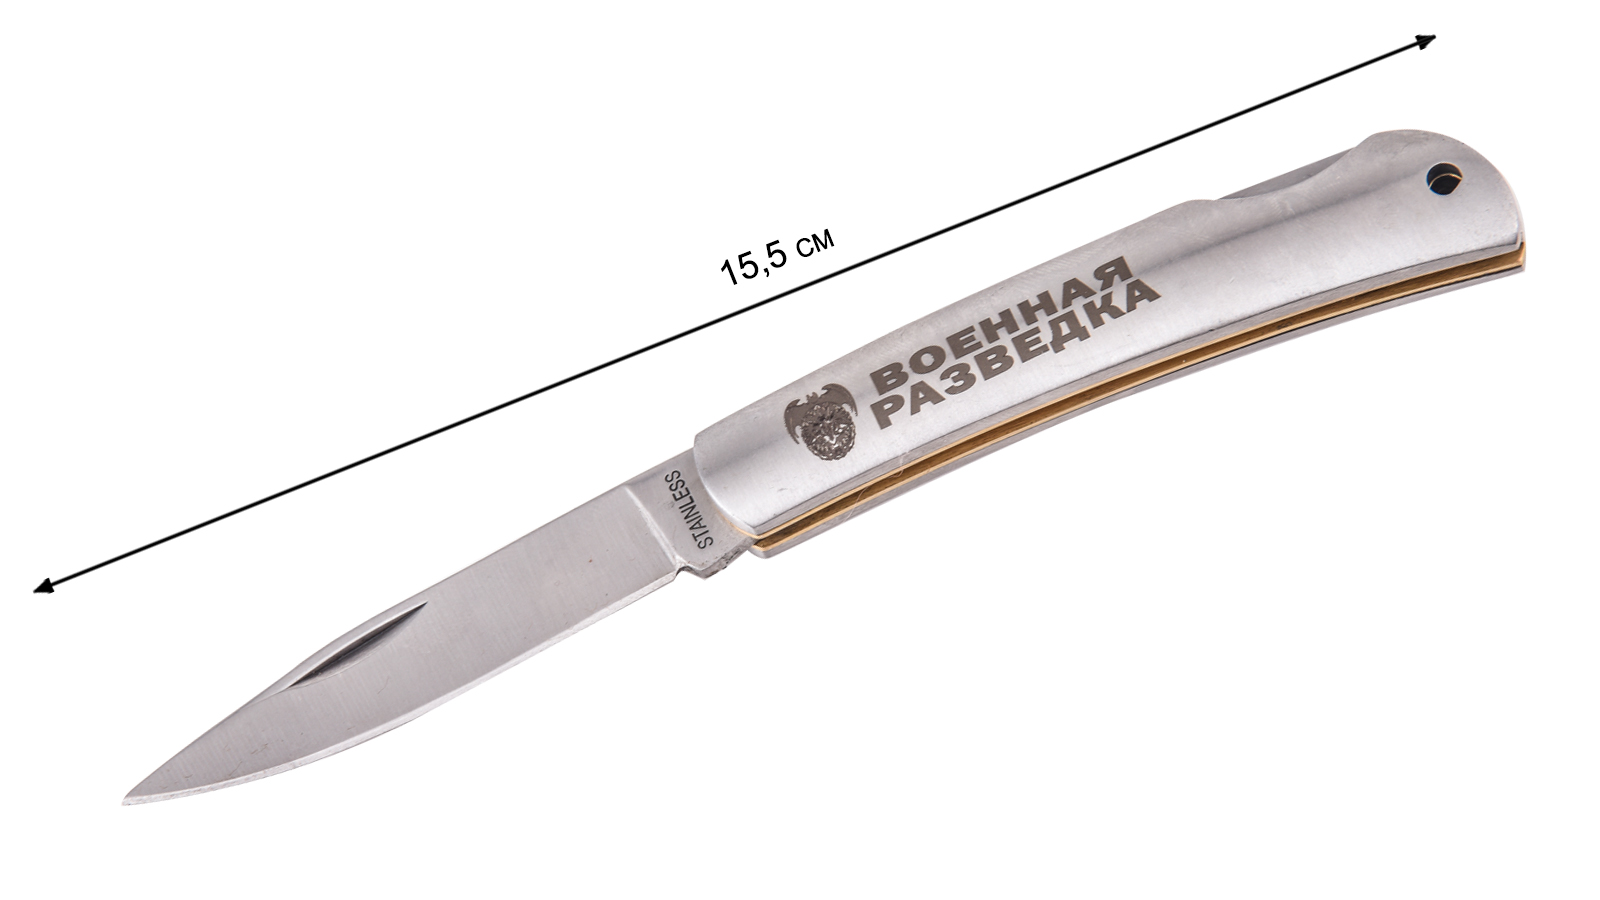 Купить надёжный складной нож с гравировкой "Военная разведка"